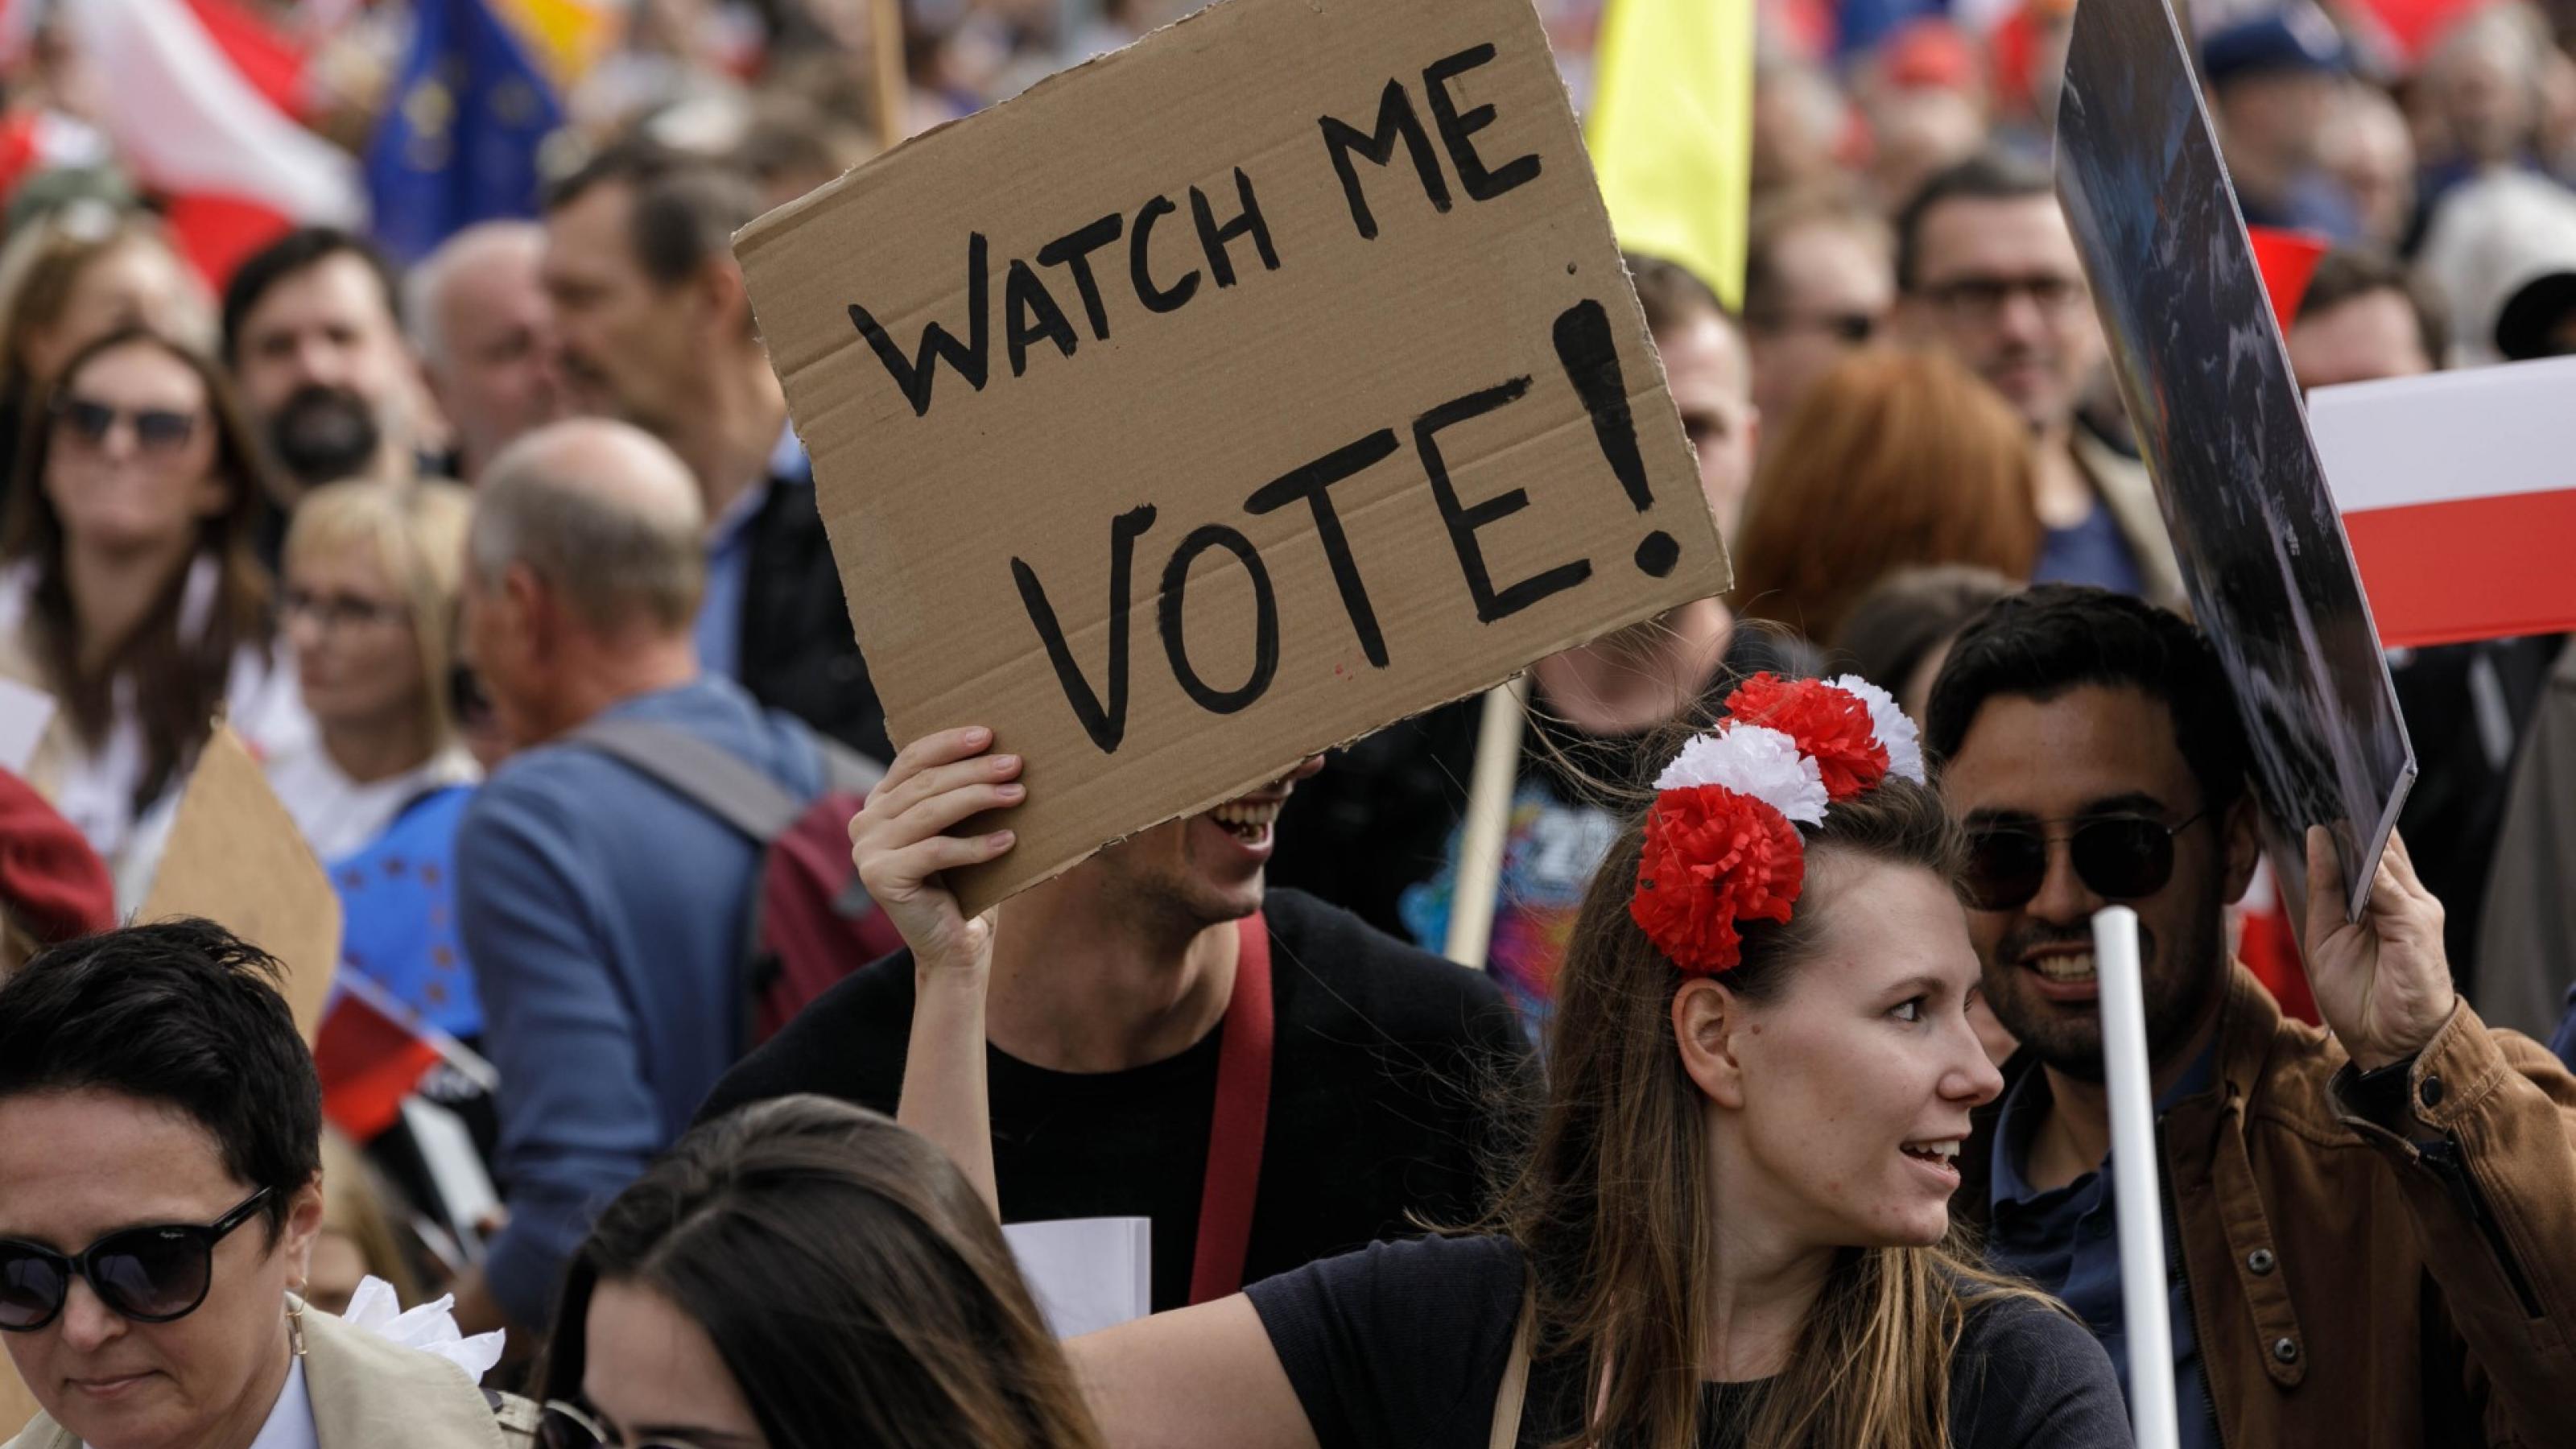 eine Gruppe von Menschen, die Schilder halten. Eine Frau hält ein Schild mit dem Spruch „Watch me Vote“